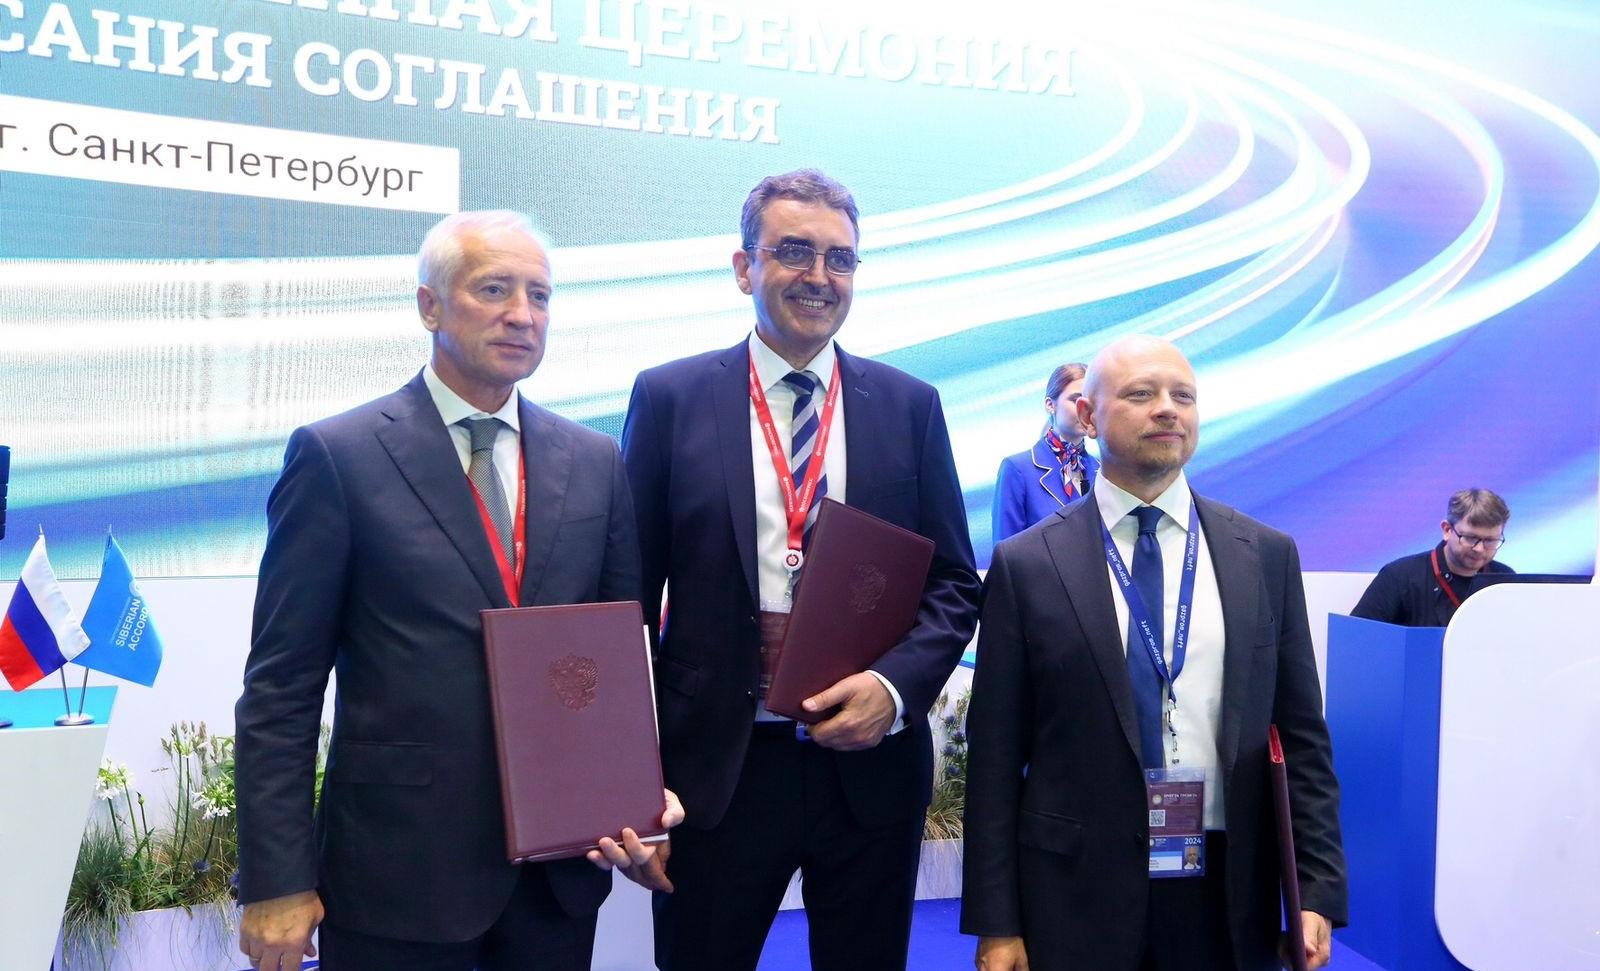 «Газпром нефть» поддержит развитие дистанционной занятости в Томской области